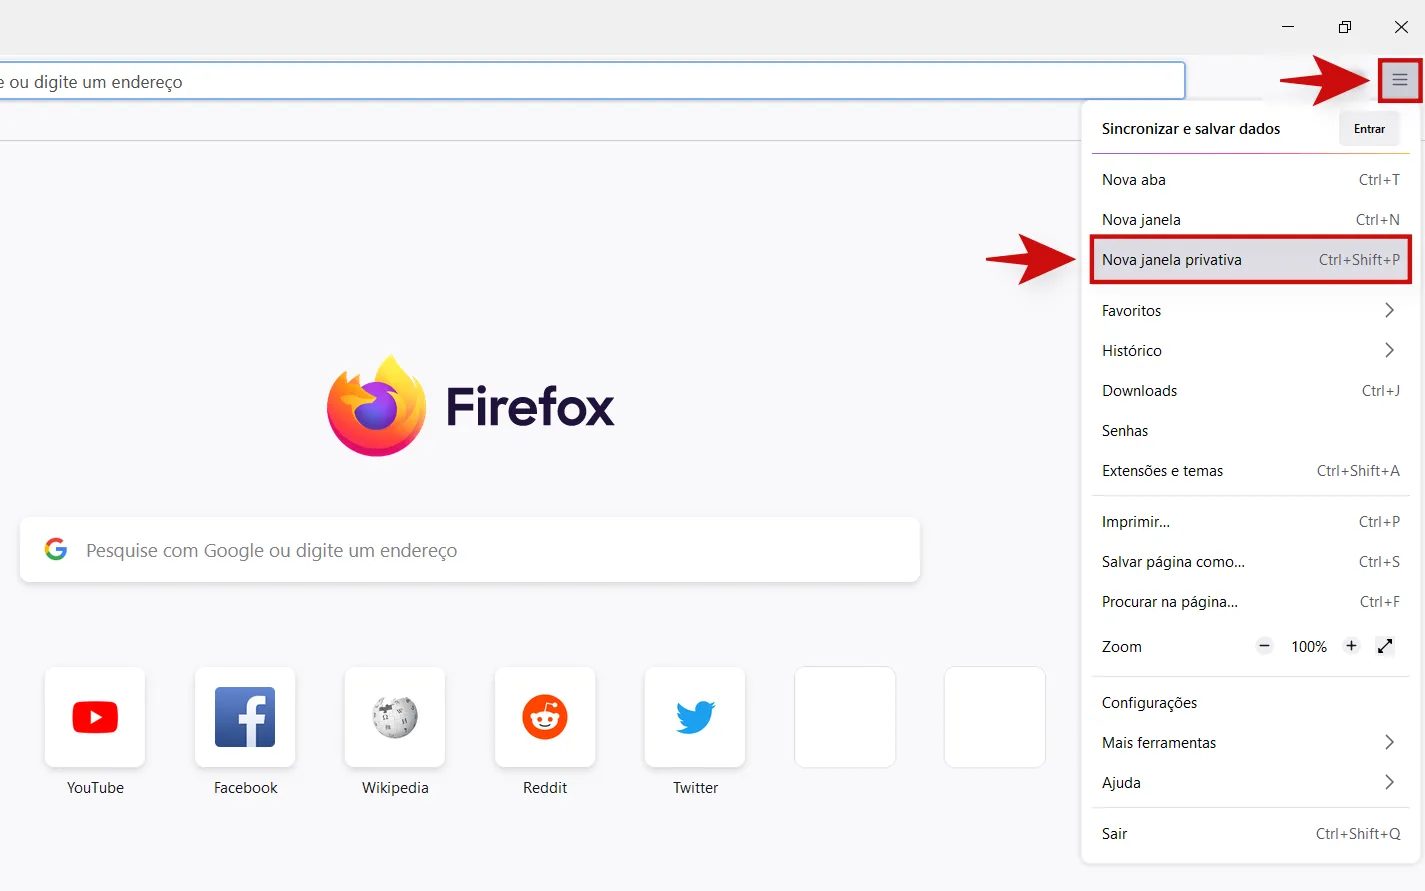 Também não há muitas diferenças no processo para usuários do Firefox (Captura: Kris Gaiato)